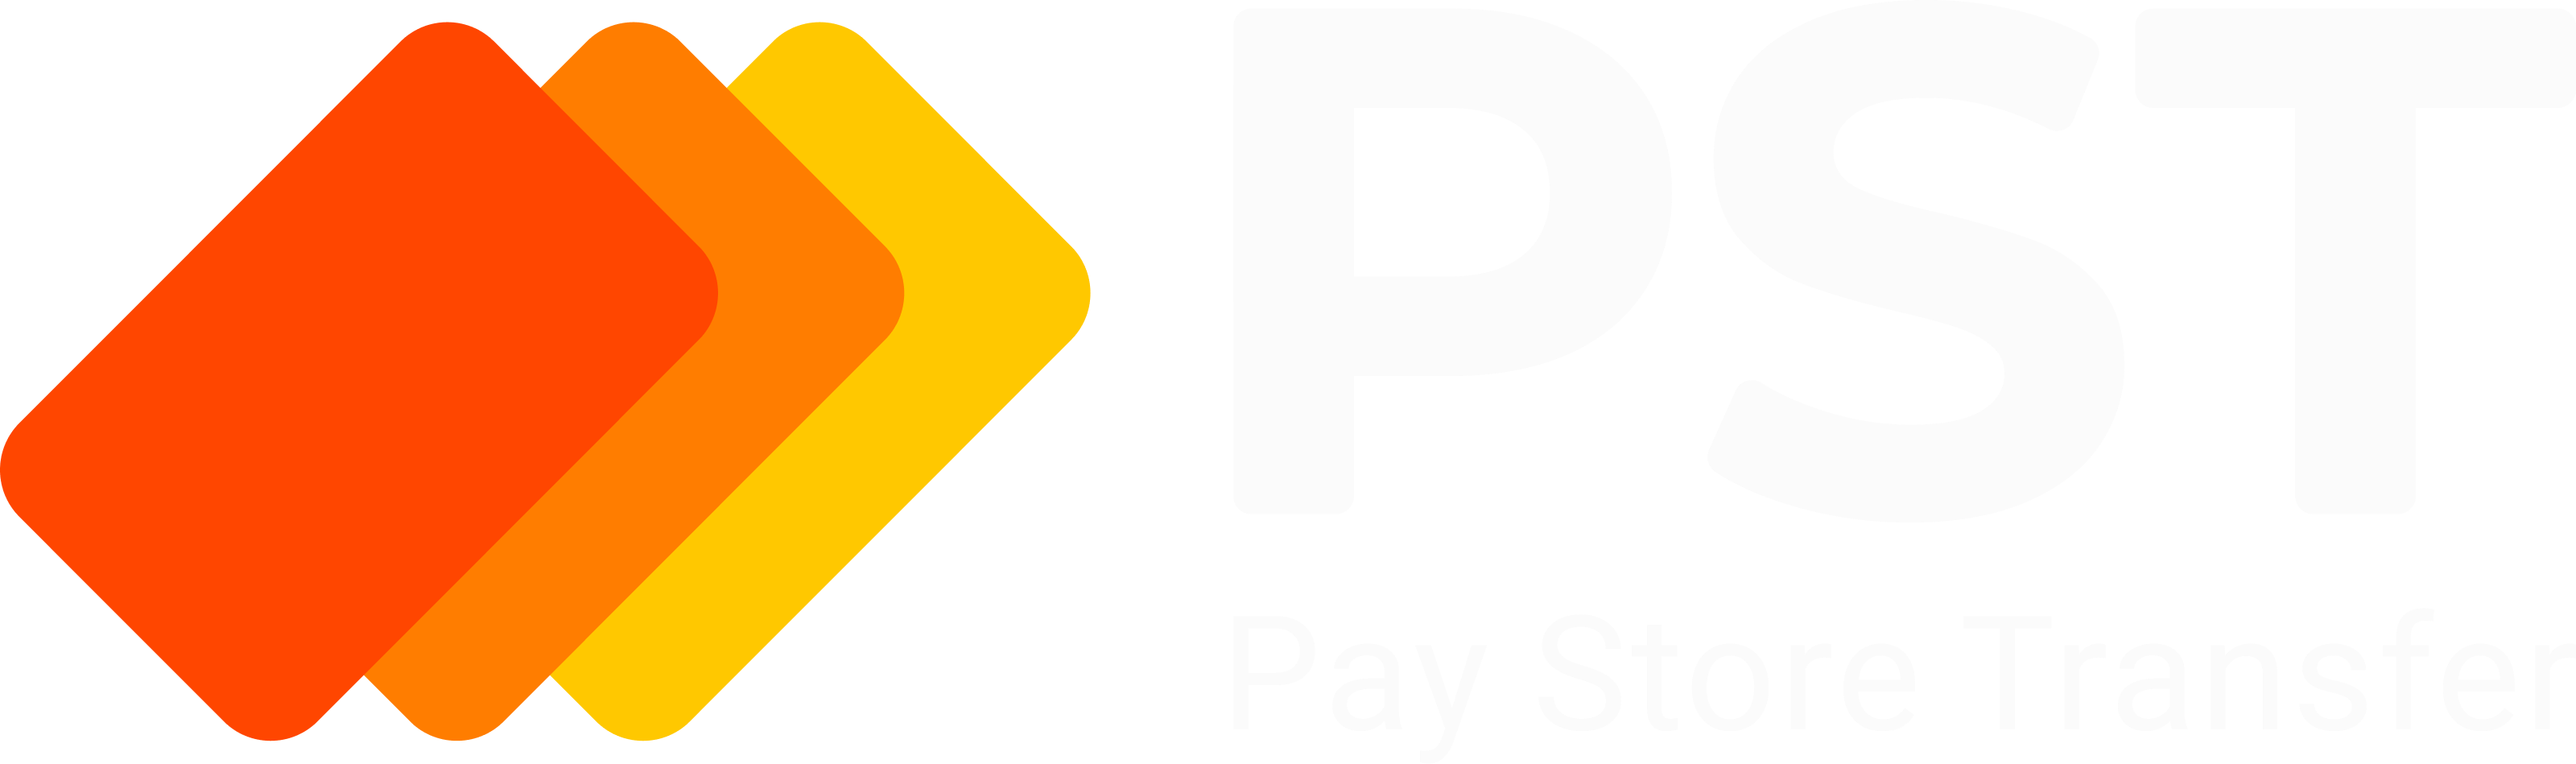 PSTNET - Company logo